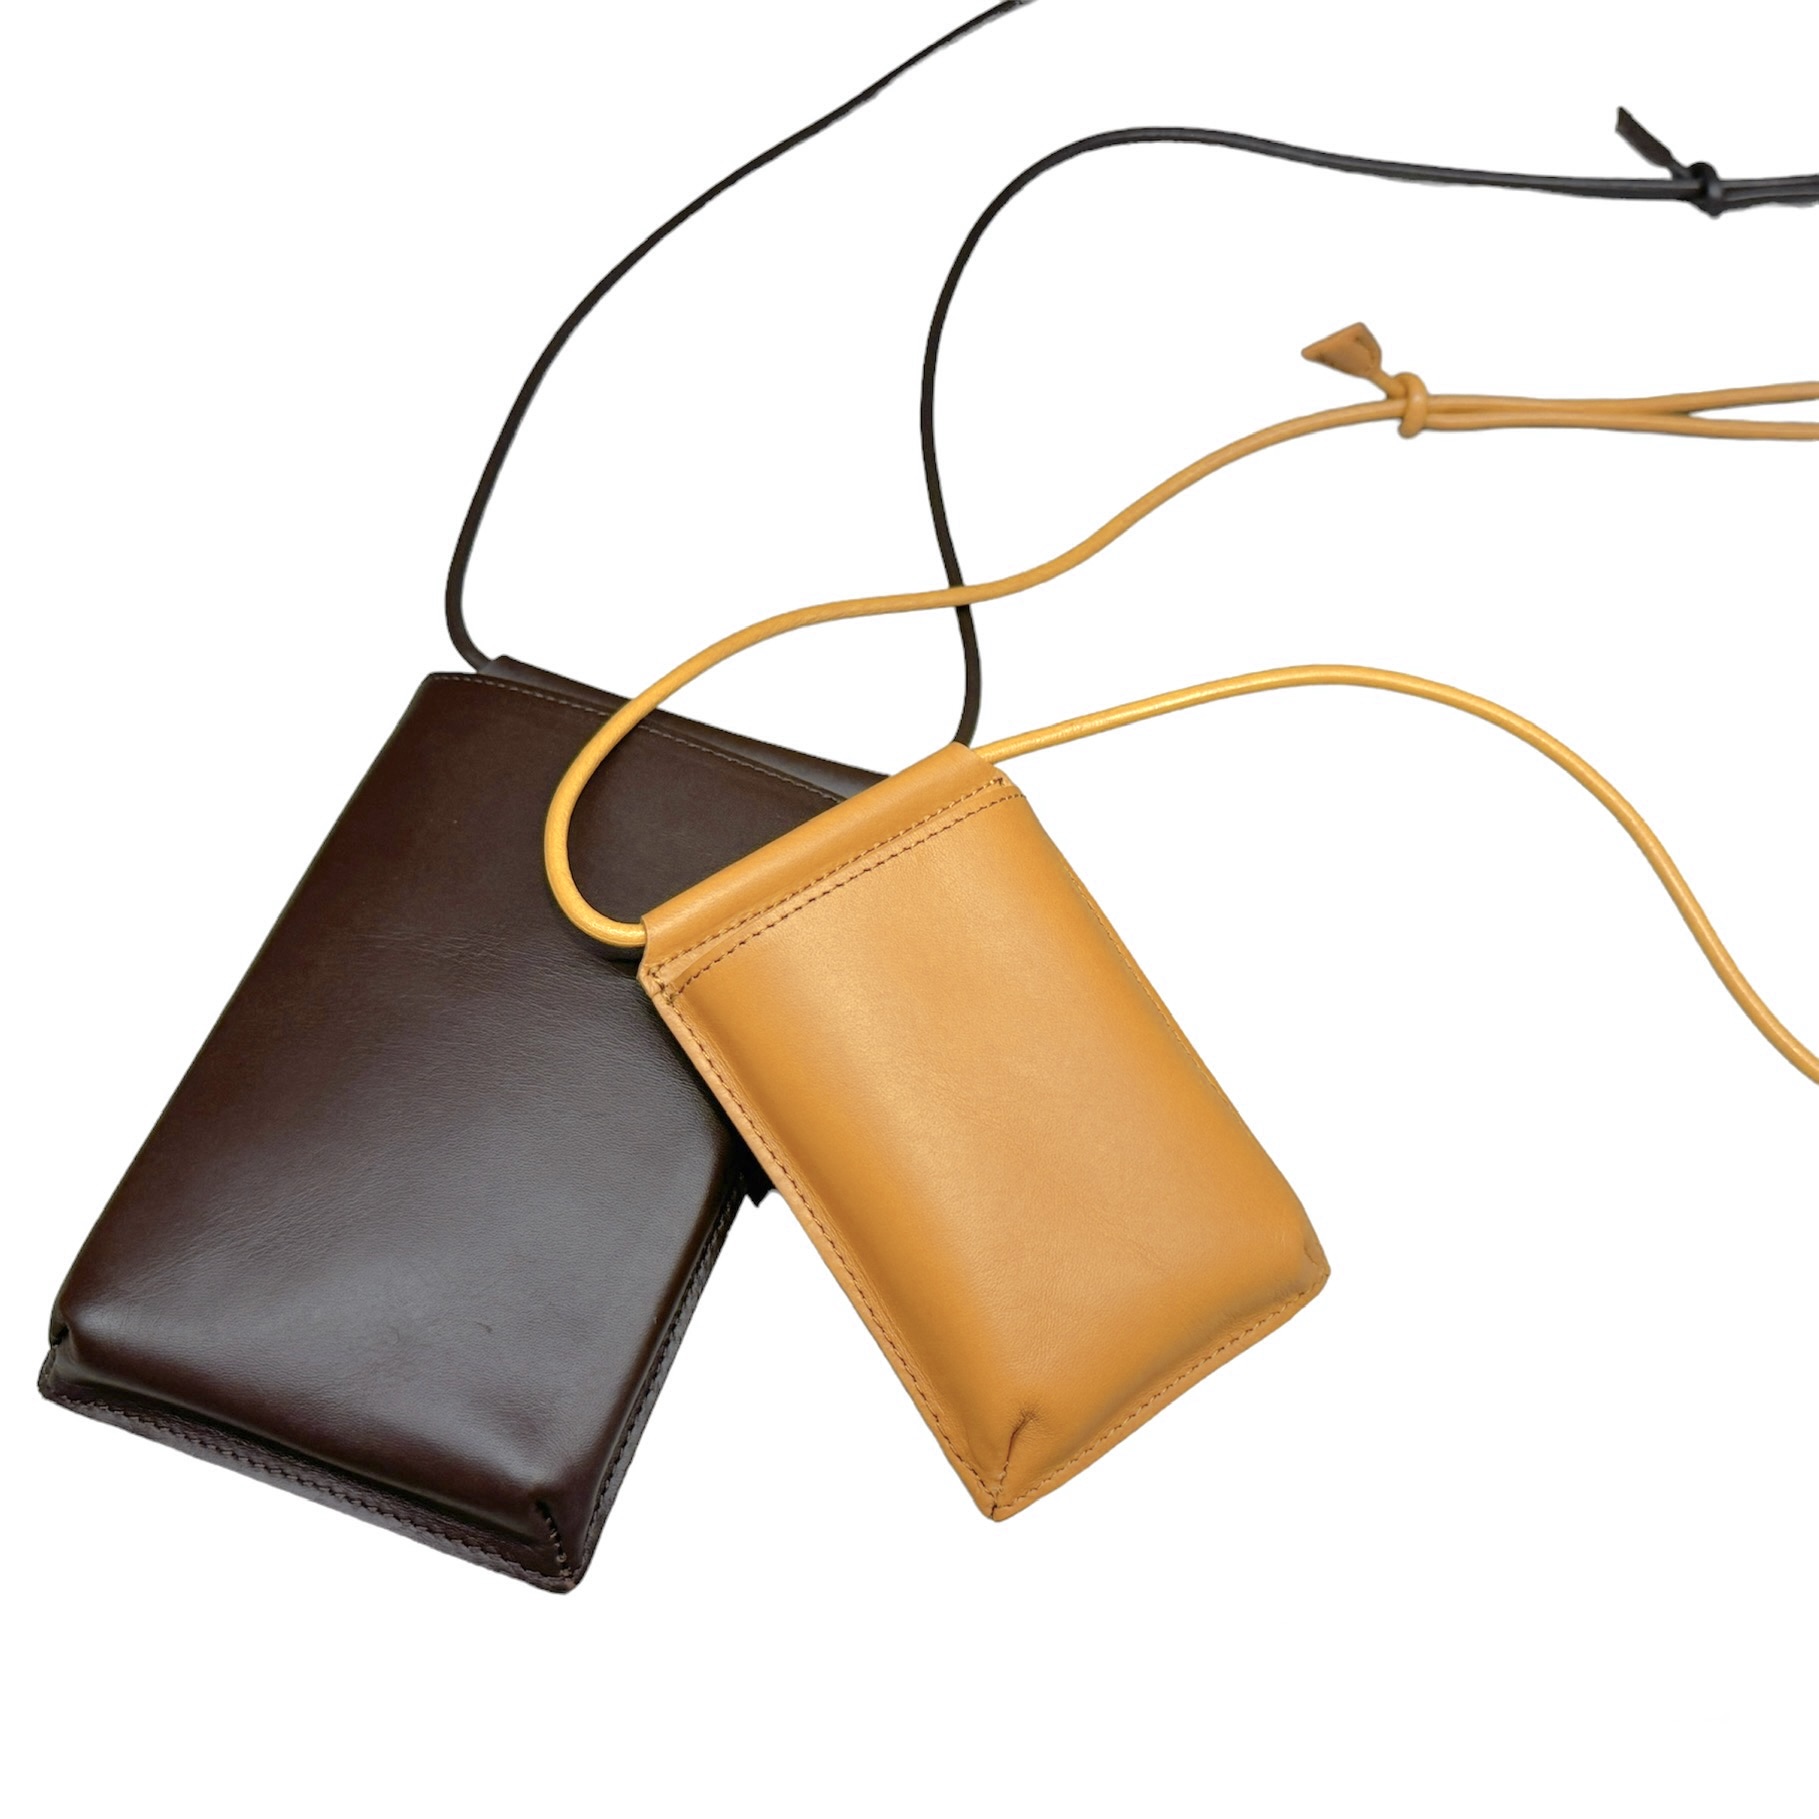 カードケース | SLOW – スロウ 公式ECサイト | 革製のバッグ、財布 等